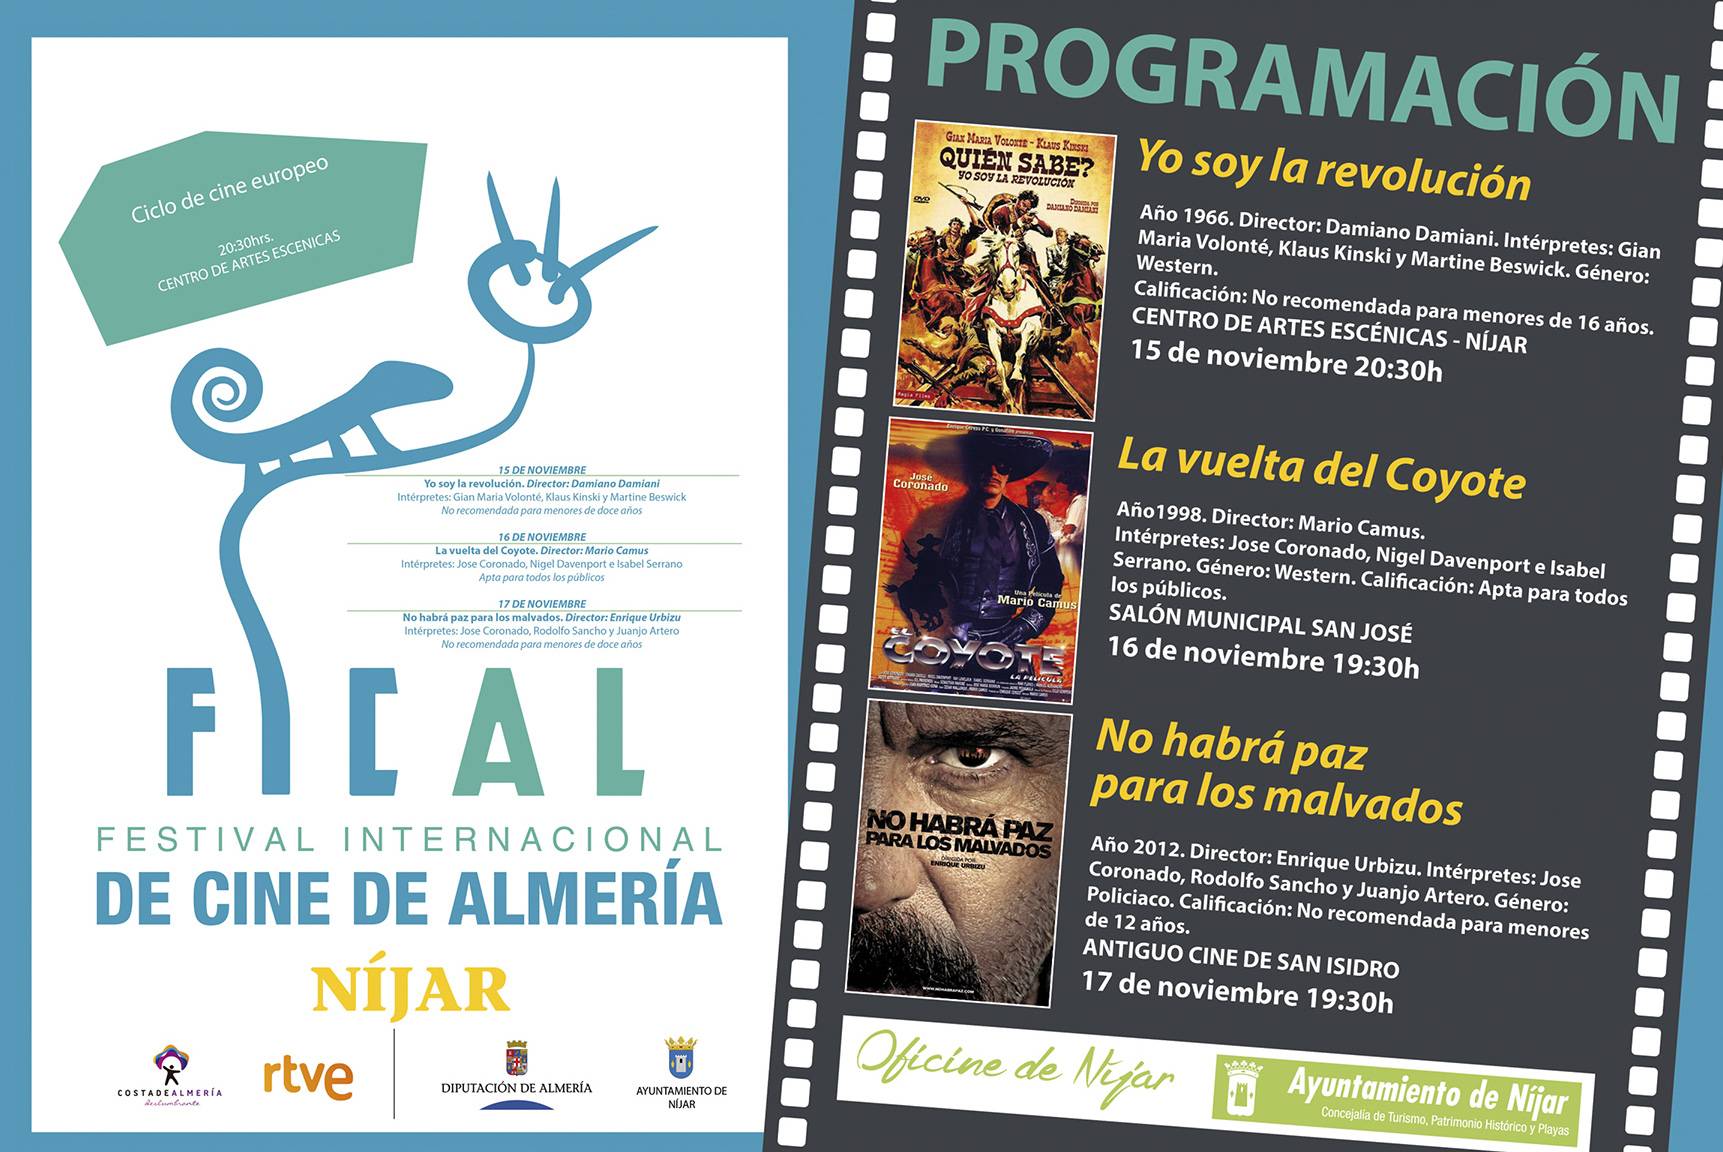 Programación Ciclo de Cine Europeo en Níjar, Festival Internacional de Cine de Almería 